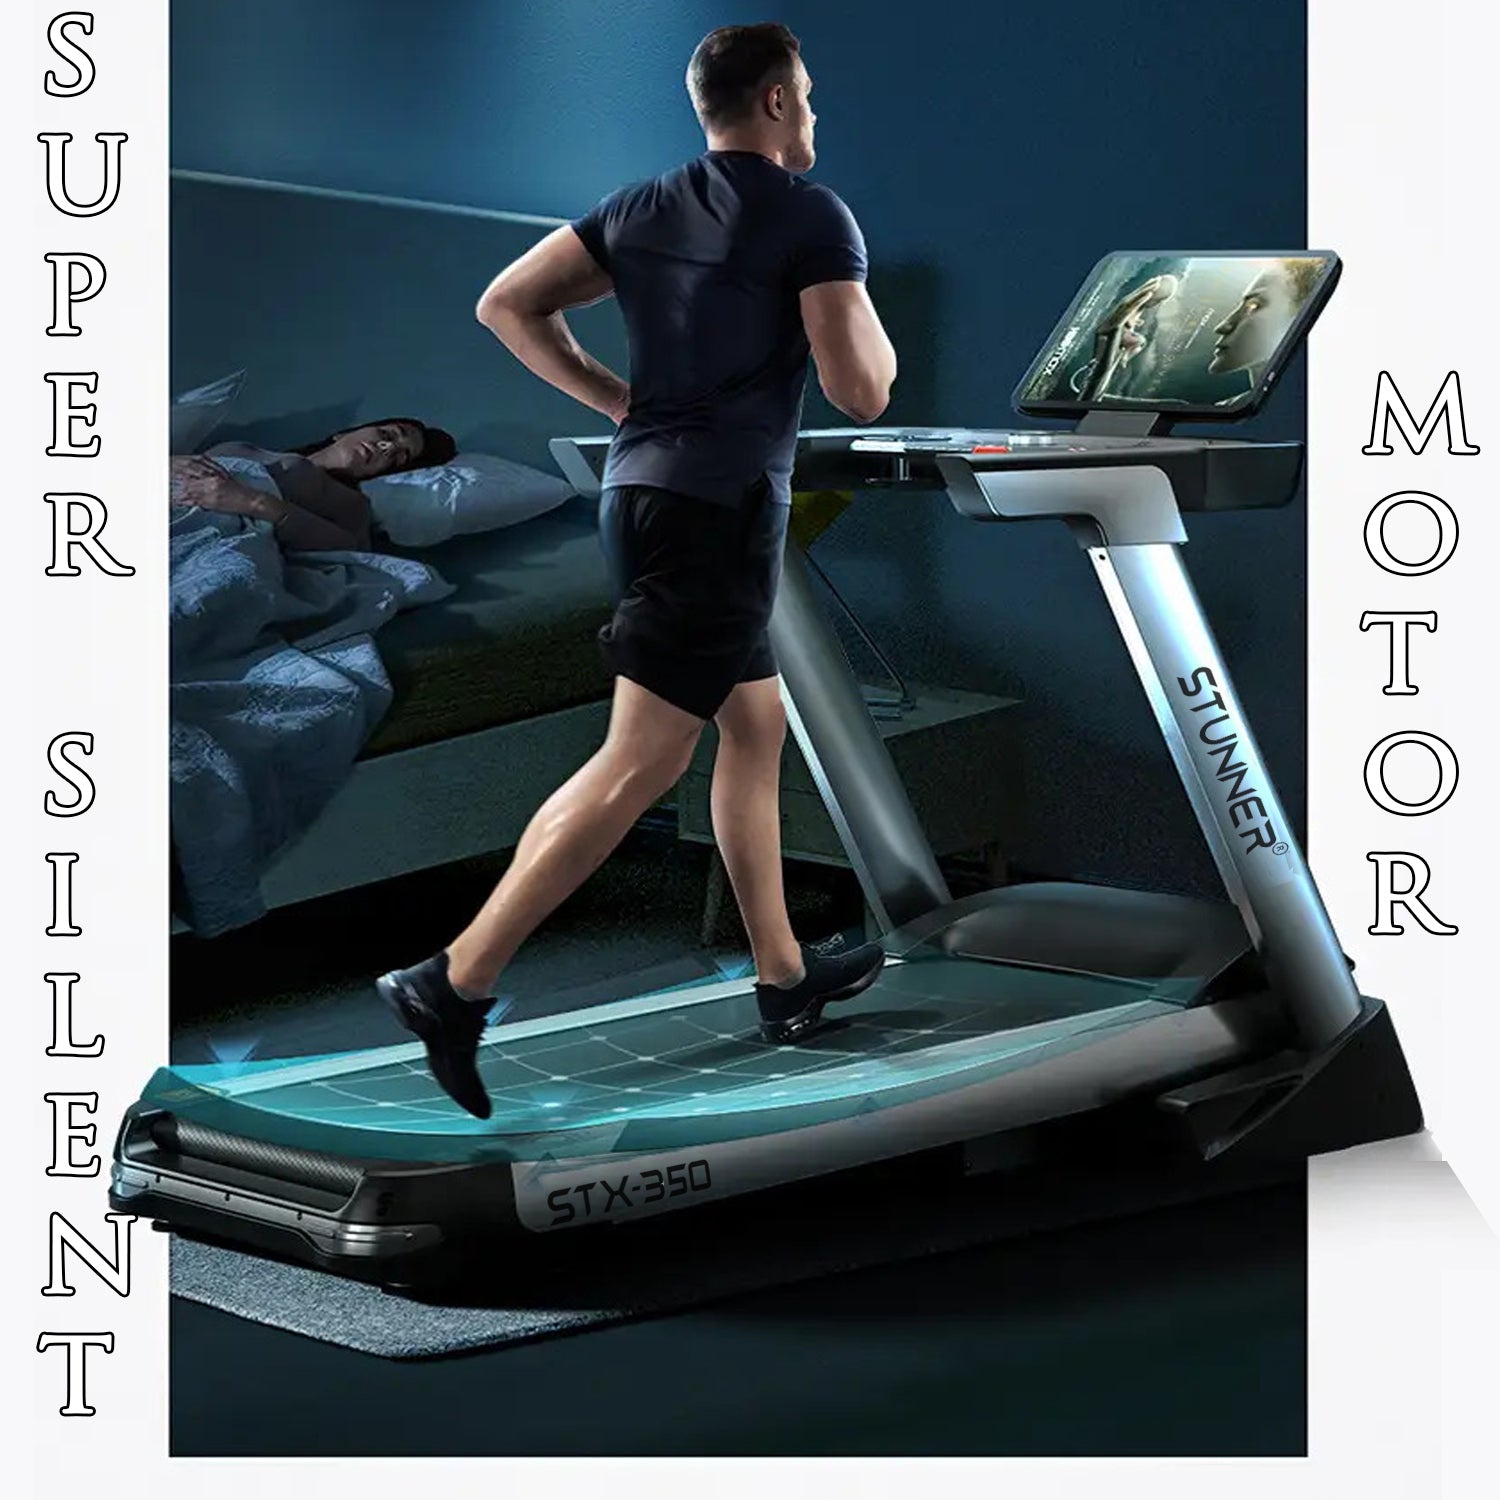 STX-350 Motorized Treadmill